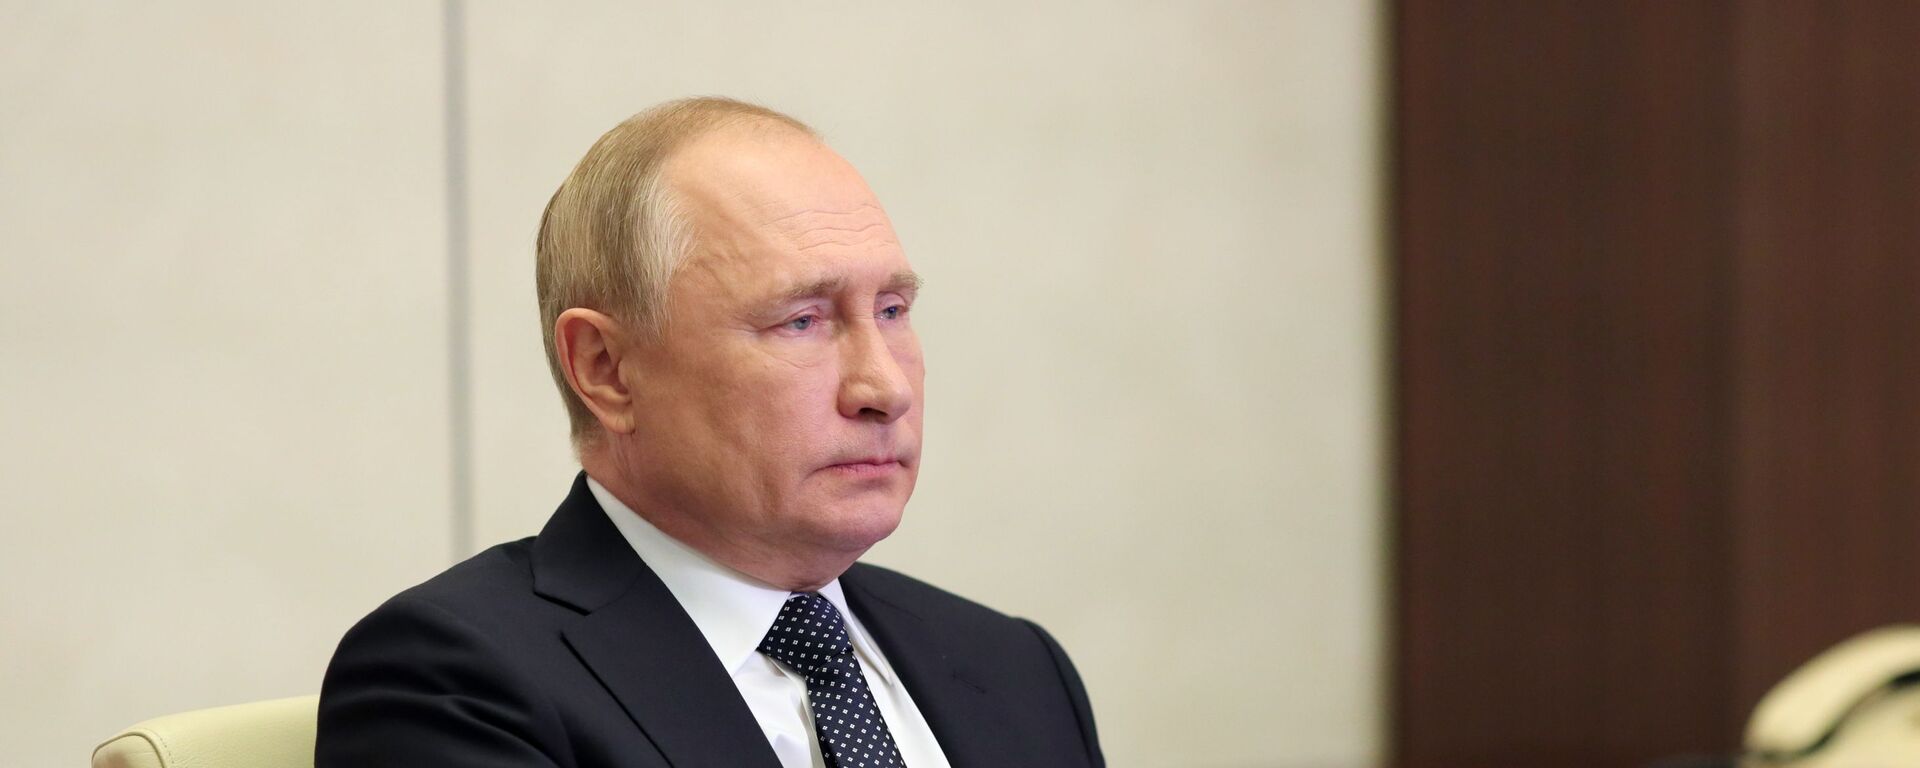 الرئيس الروسي فلاديمير بوتين خلال مشاركته في مؤتمر قمة مجموعة العشرين، روسيا 31 أكتوبر 2021 - سبوتنيك عربي, 1920, 21.11.2021